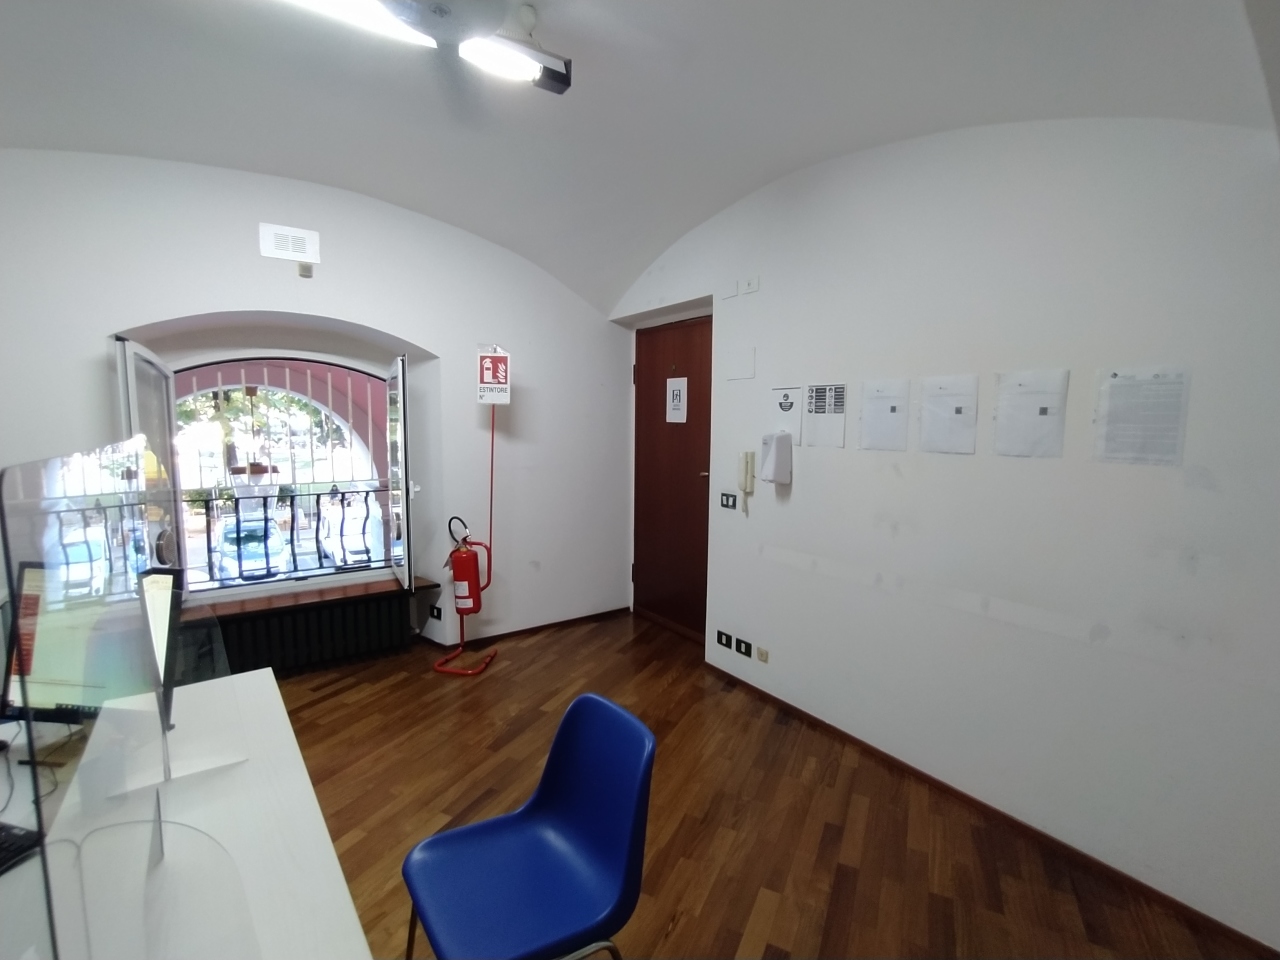 Ufficio / Studio in vendita a Savona, 4 locali, prezzo € 160.000 | PortaleAgenzieImmobiliari.it